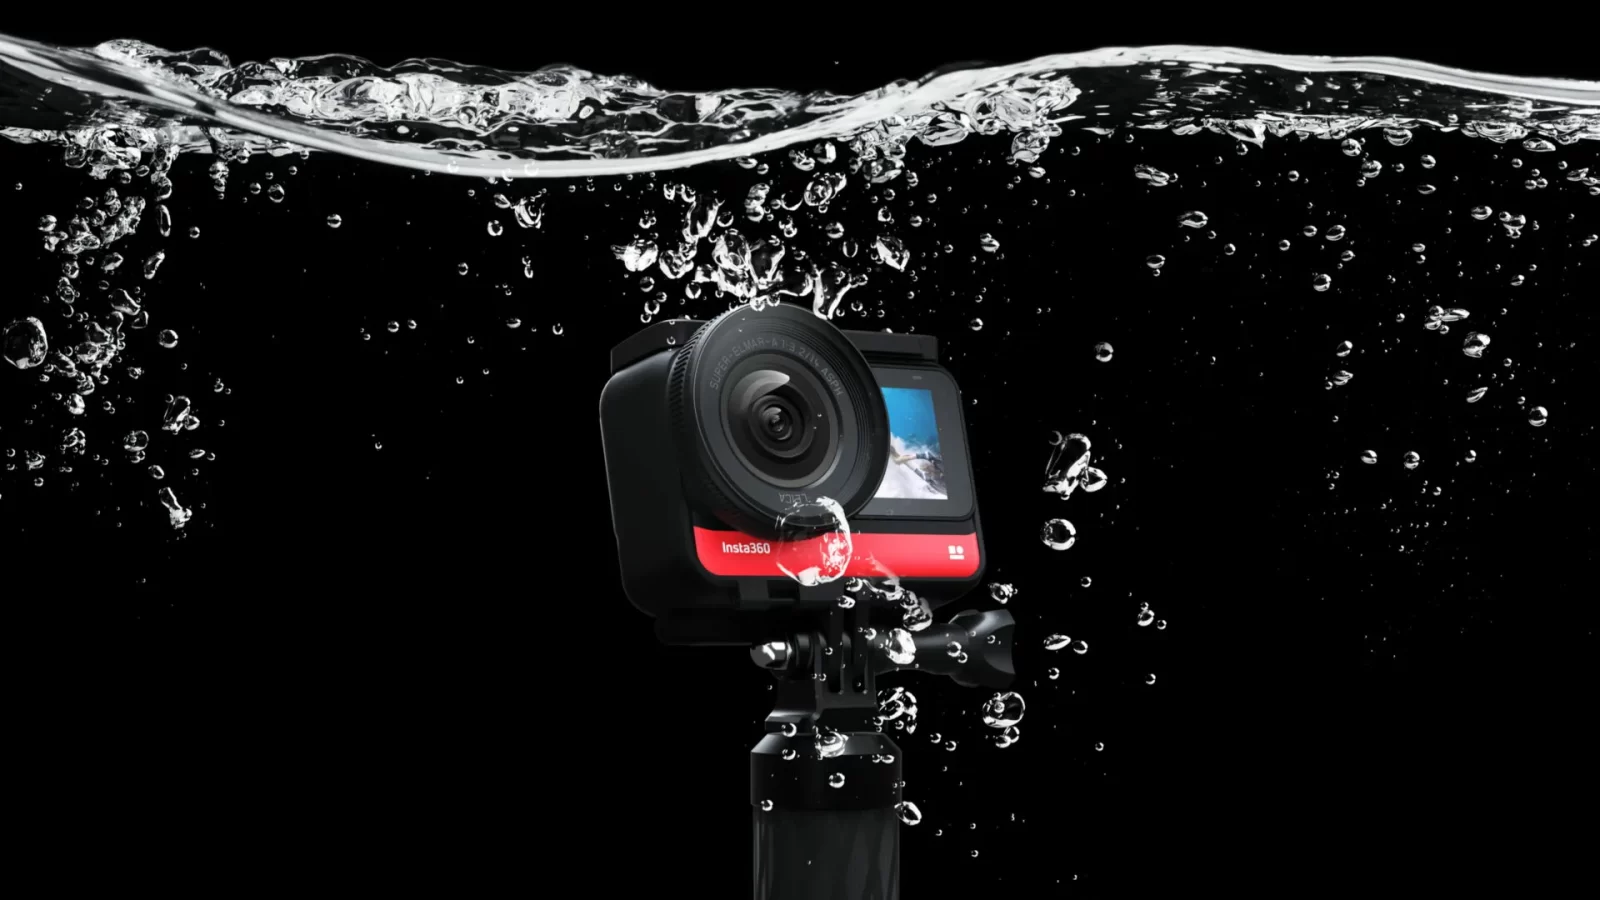 Best Underwater Cameras